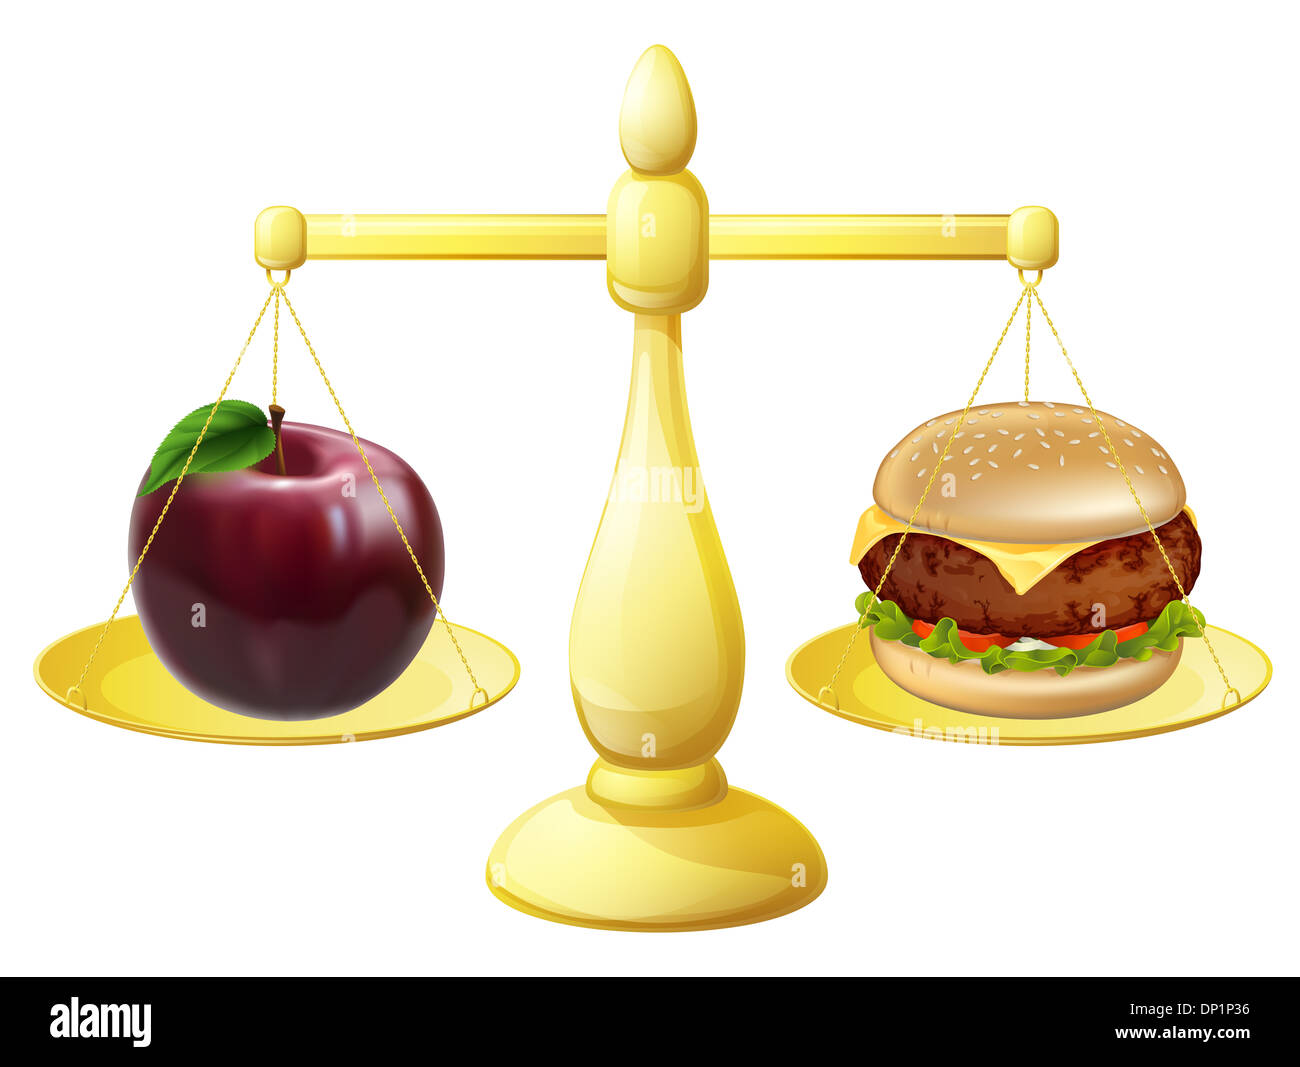 Gesunde Ernährung Entscheidung Konzept für einen Apfel und Burger auf eine Reihe von Skalen Stockfoto